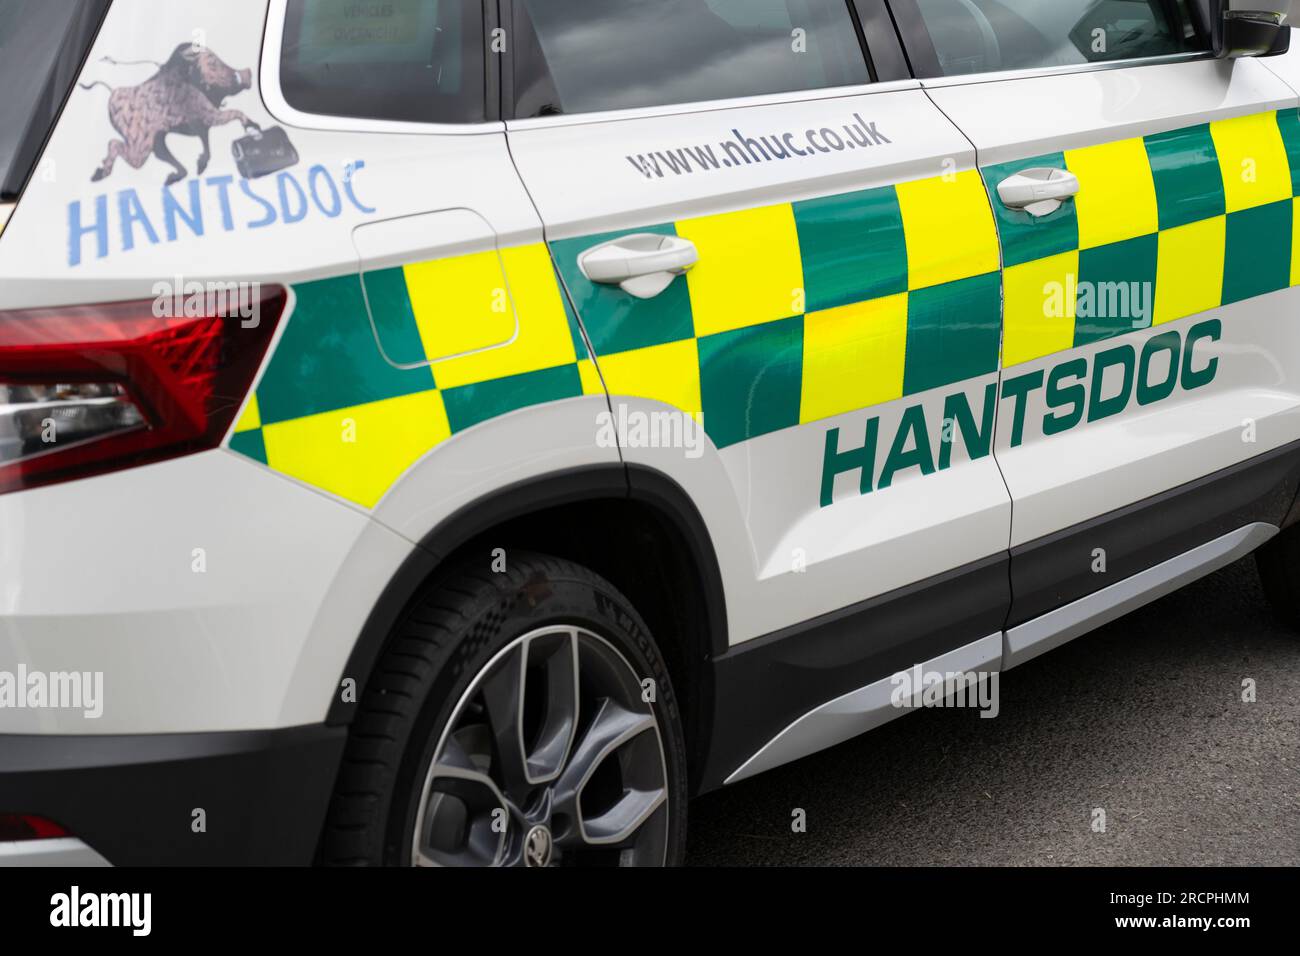 Hantsdoc Ärzte Auto für Notfallbesuche in Hook Surgery, England. Hantsdoc bietet den Service außerhalb der Geschäftszeiten für das Krankenhaus Basingstoke an Stockfoto